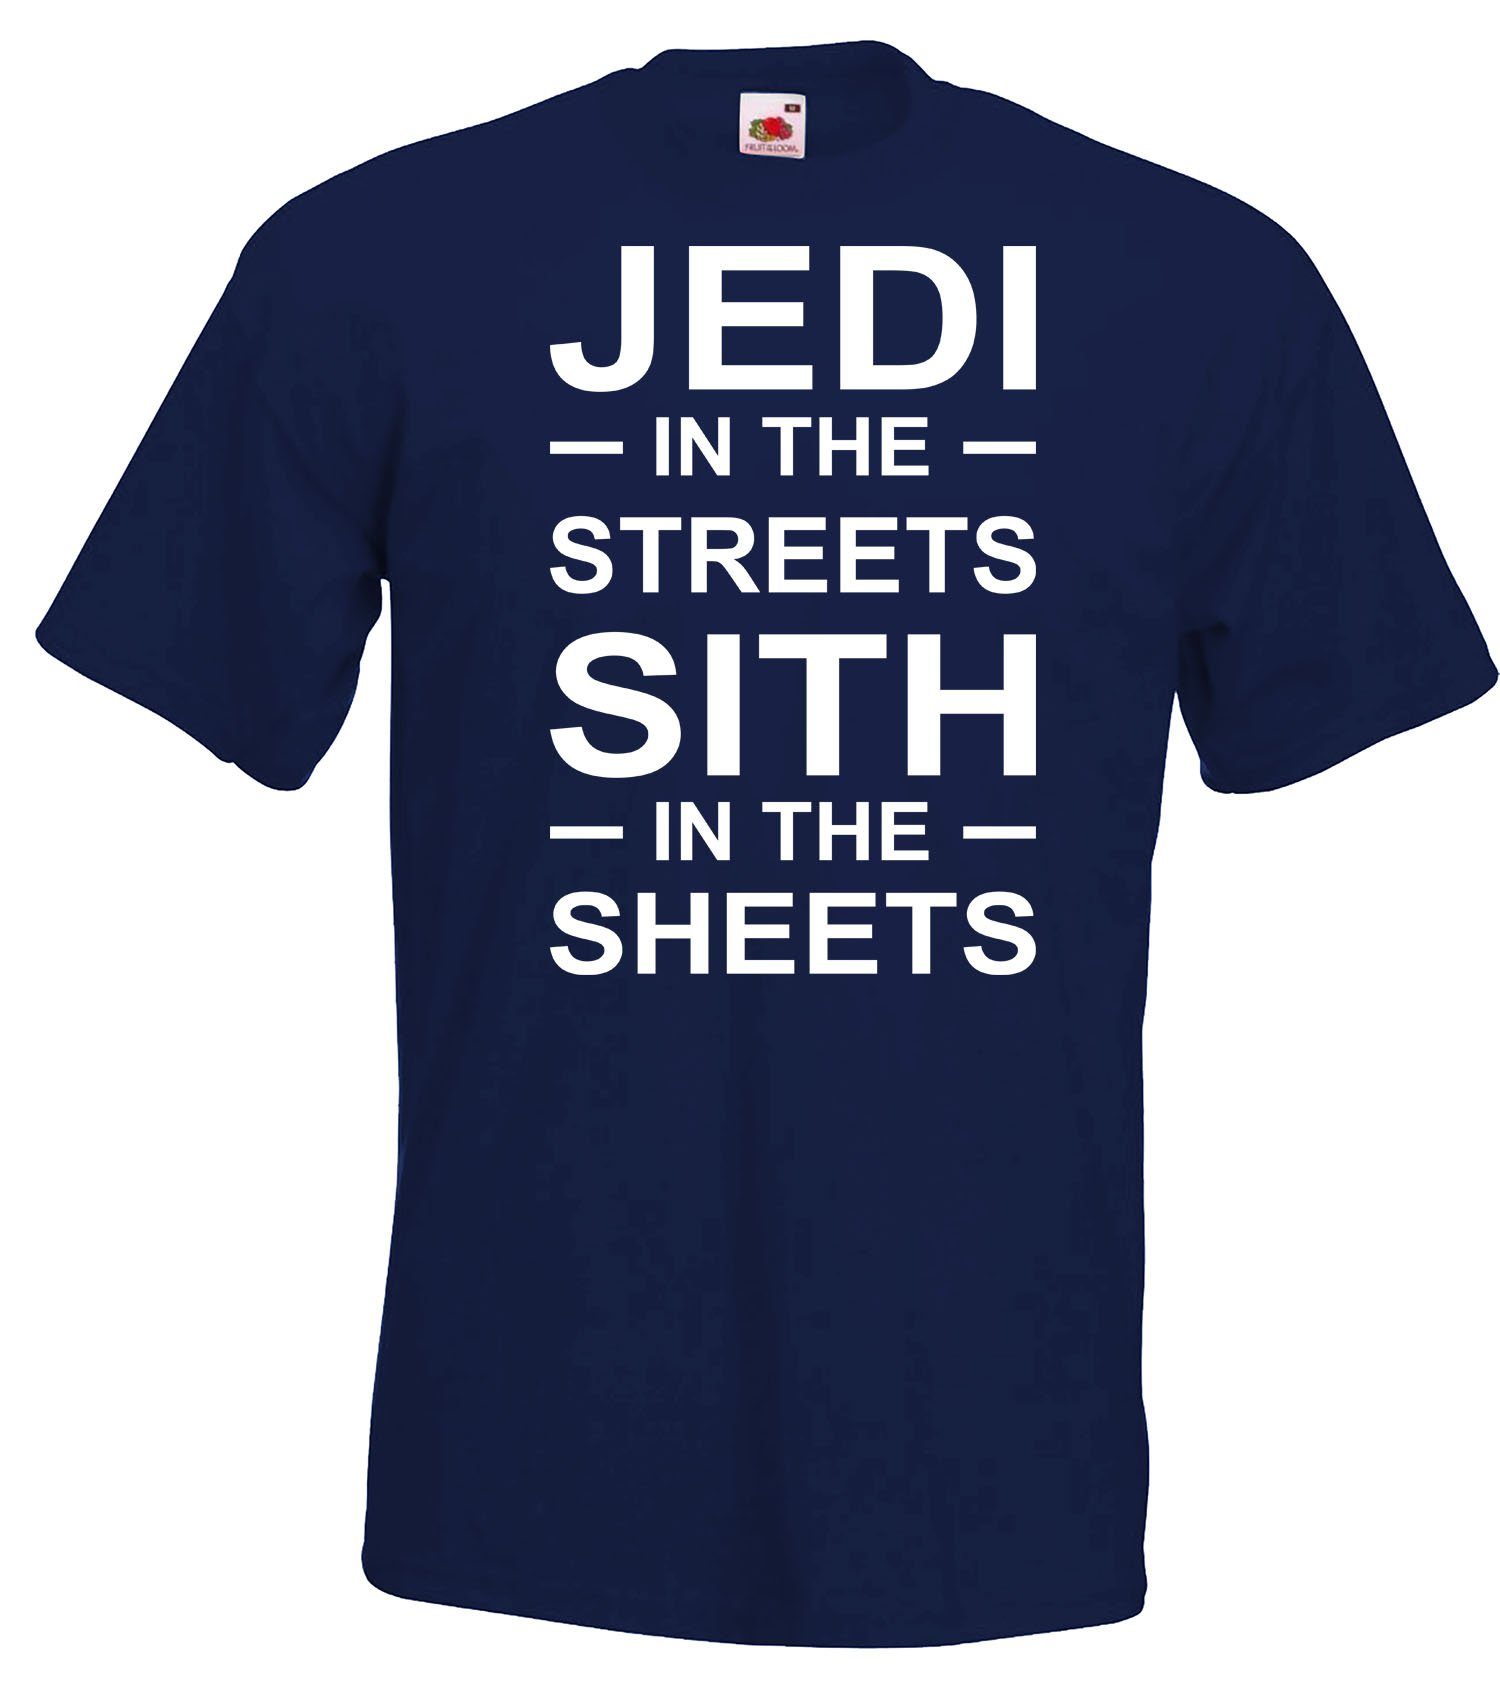 mit in Herren Designz Jedi Frontprint Streets T-Shirt Navyblau Serien Shirt the Youth trendigem